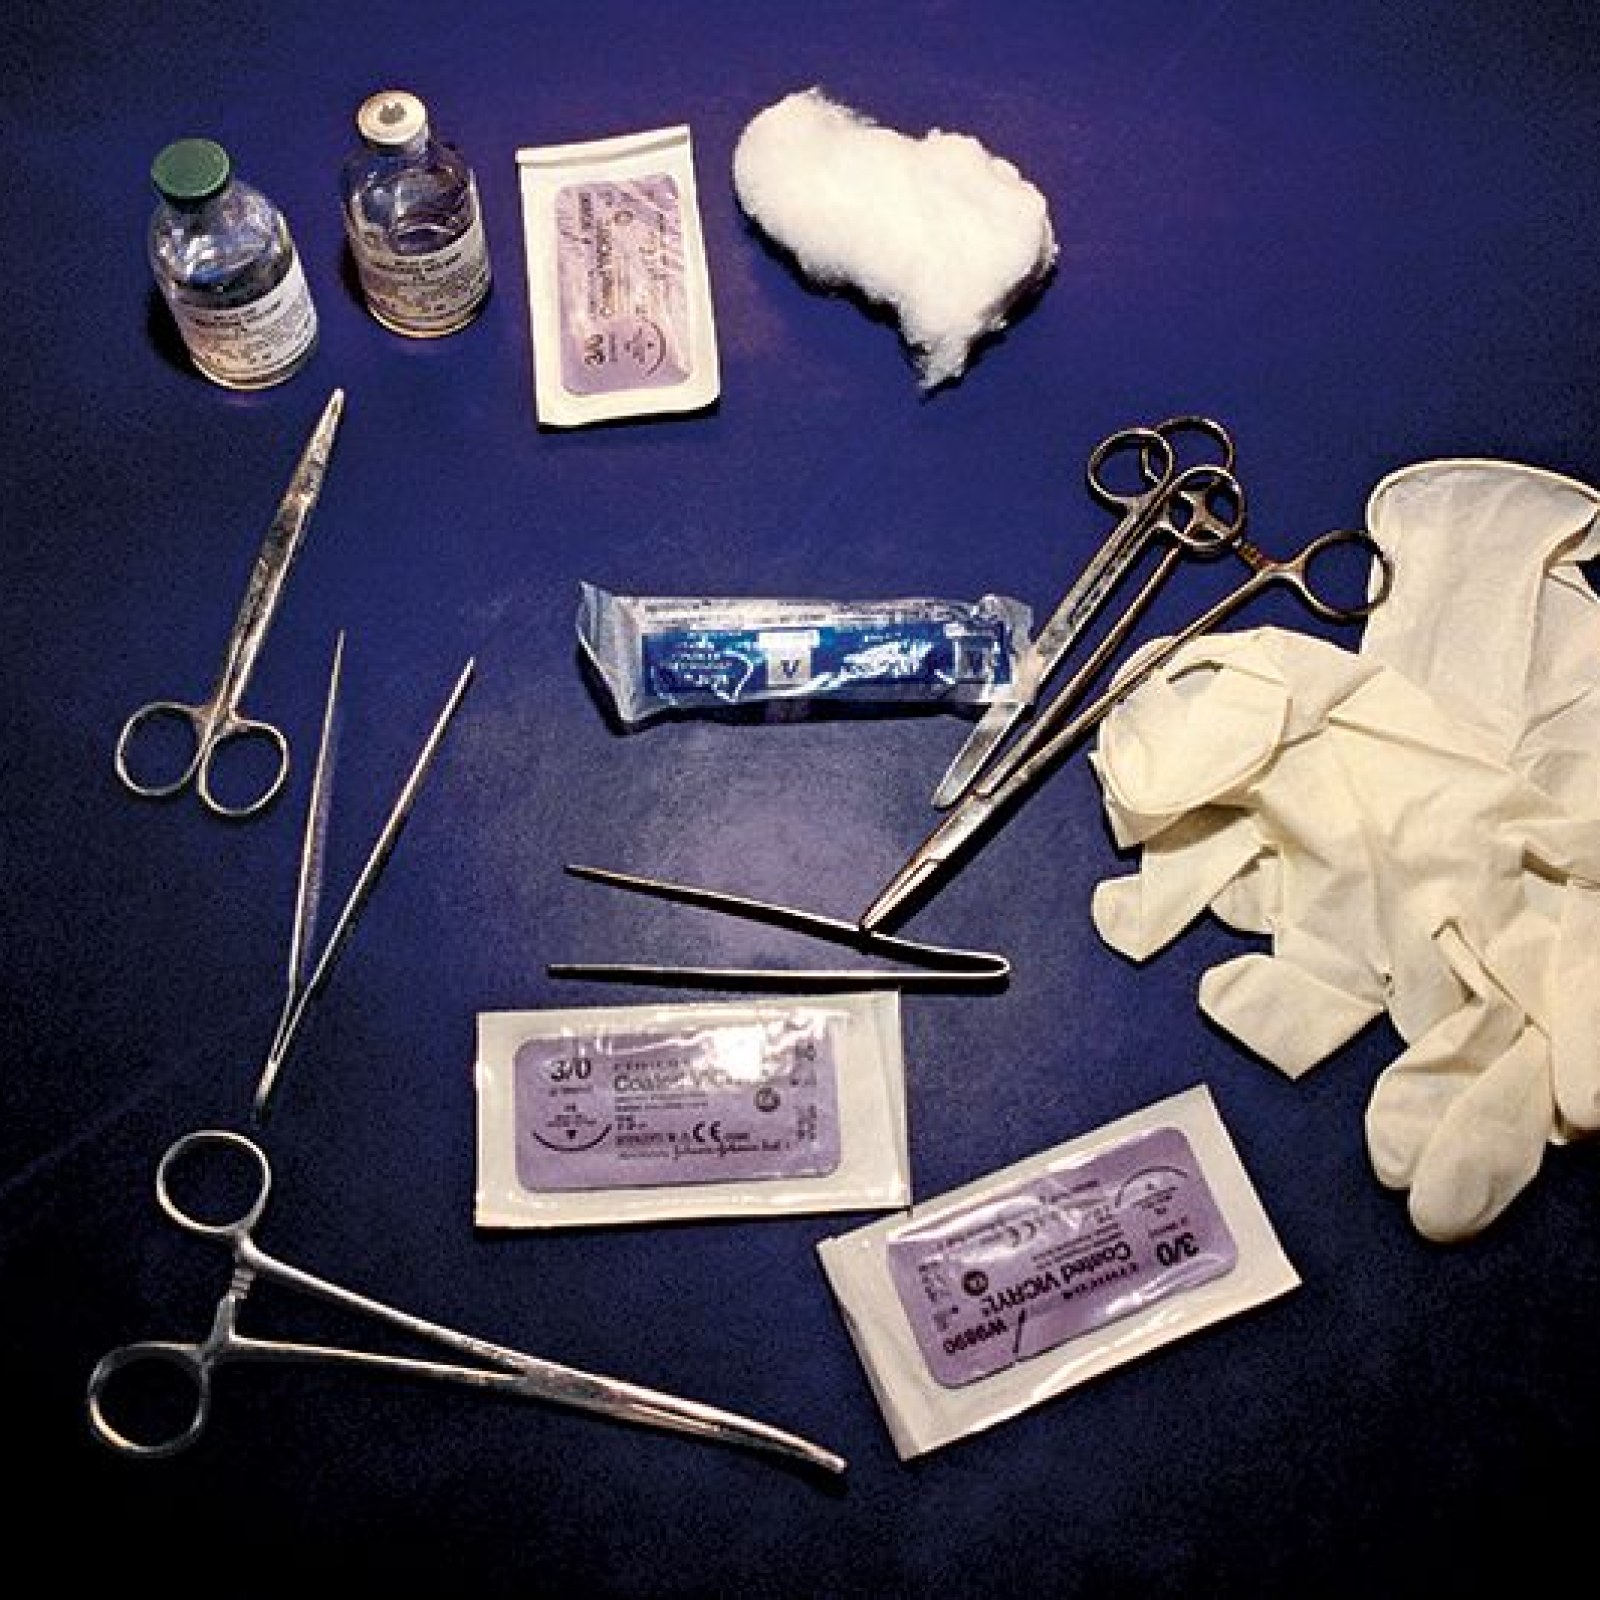 Afbeeldingsresultaat voor U.S. doctors who performed female genital mutilation on over 100 girls.